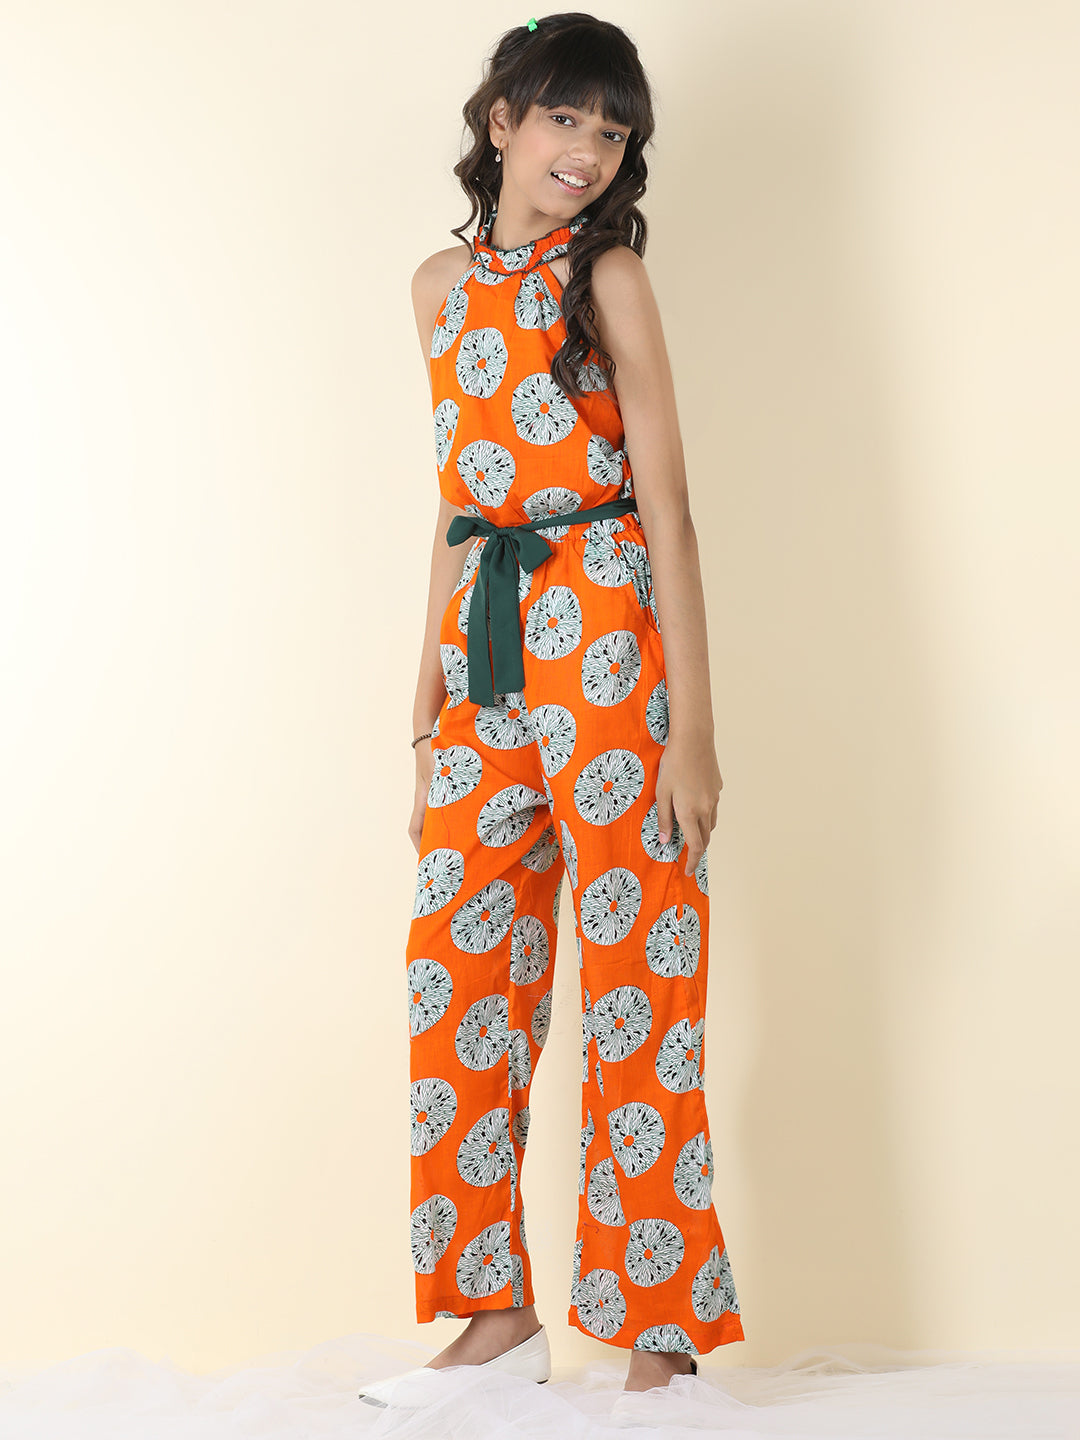 Cutiekins Girls Halter Neck Floral Print Jumpsuit -Orange & Off White